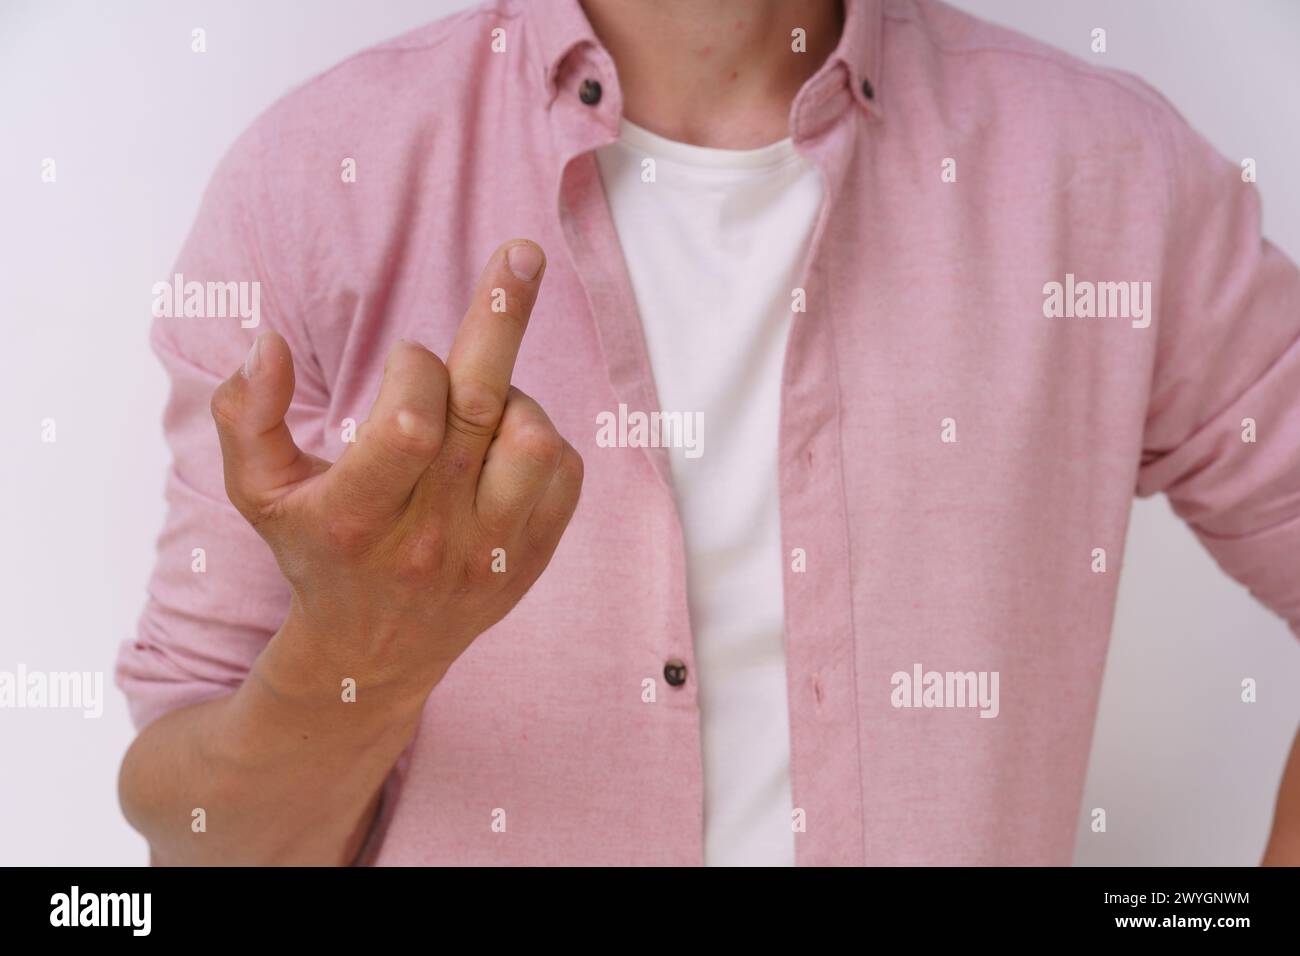 Un homme dans une chemise rose fait un geste de la main avec son pouce levé. Concept de frustration ou de gêne Banque D'Images